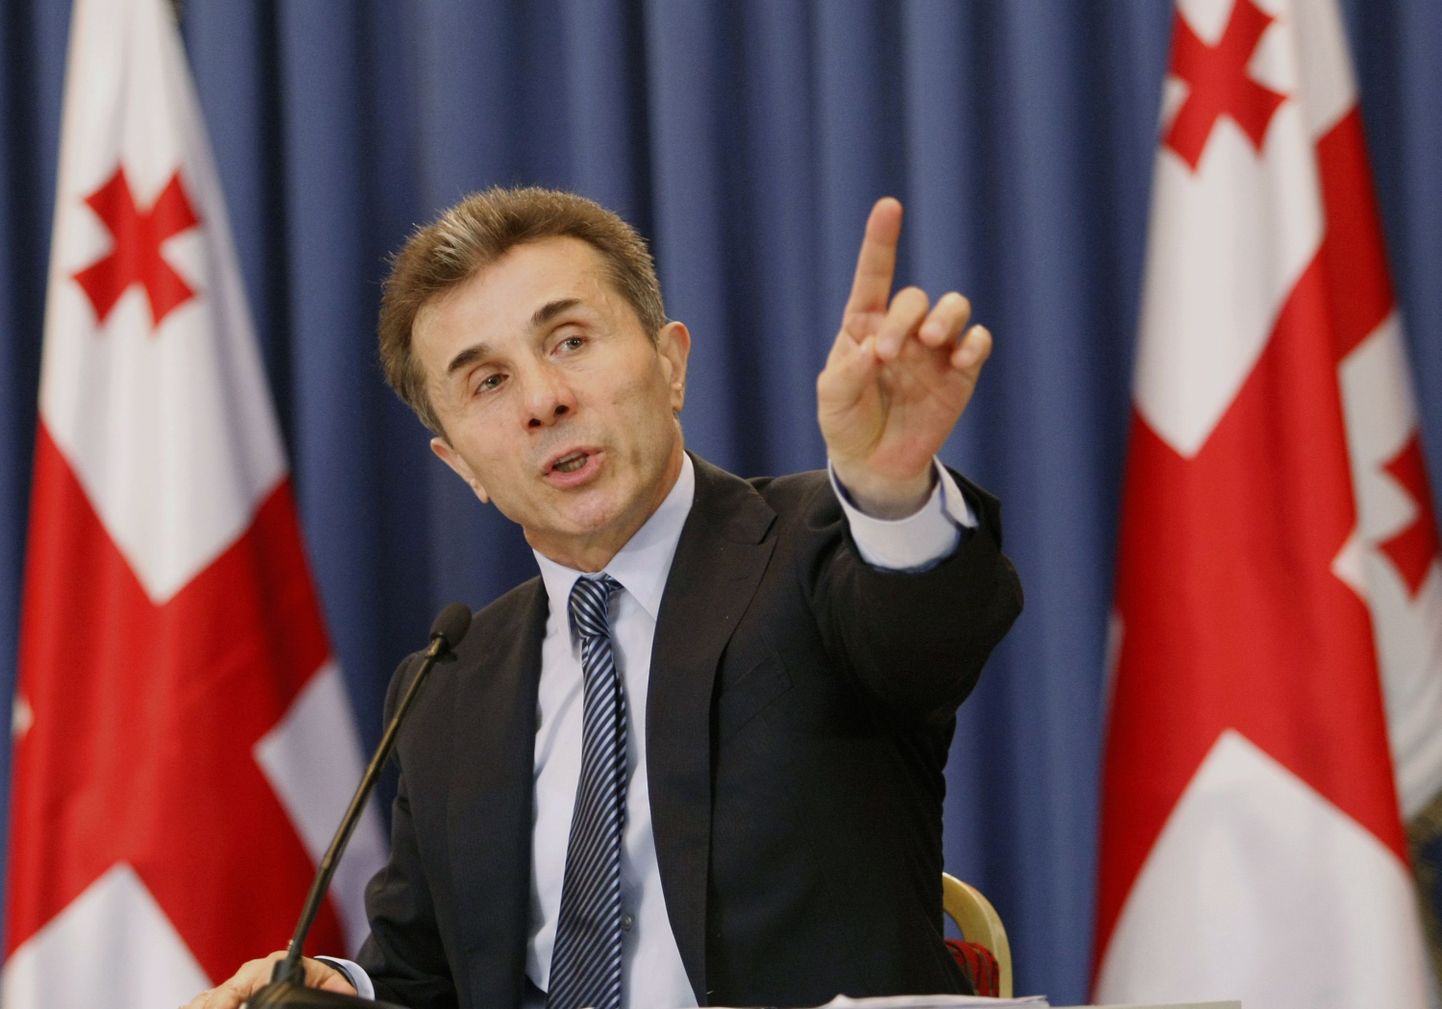 Gruusia peaminister Bidzina Ivanišvili soovib, et Saakašvili loobuks oma õigusest muuta parlamendi heakskiiduta valitsuse koosseisu.